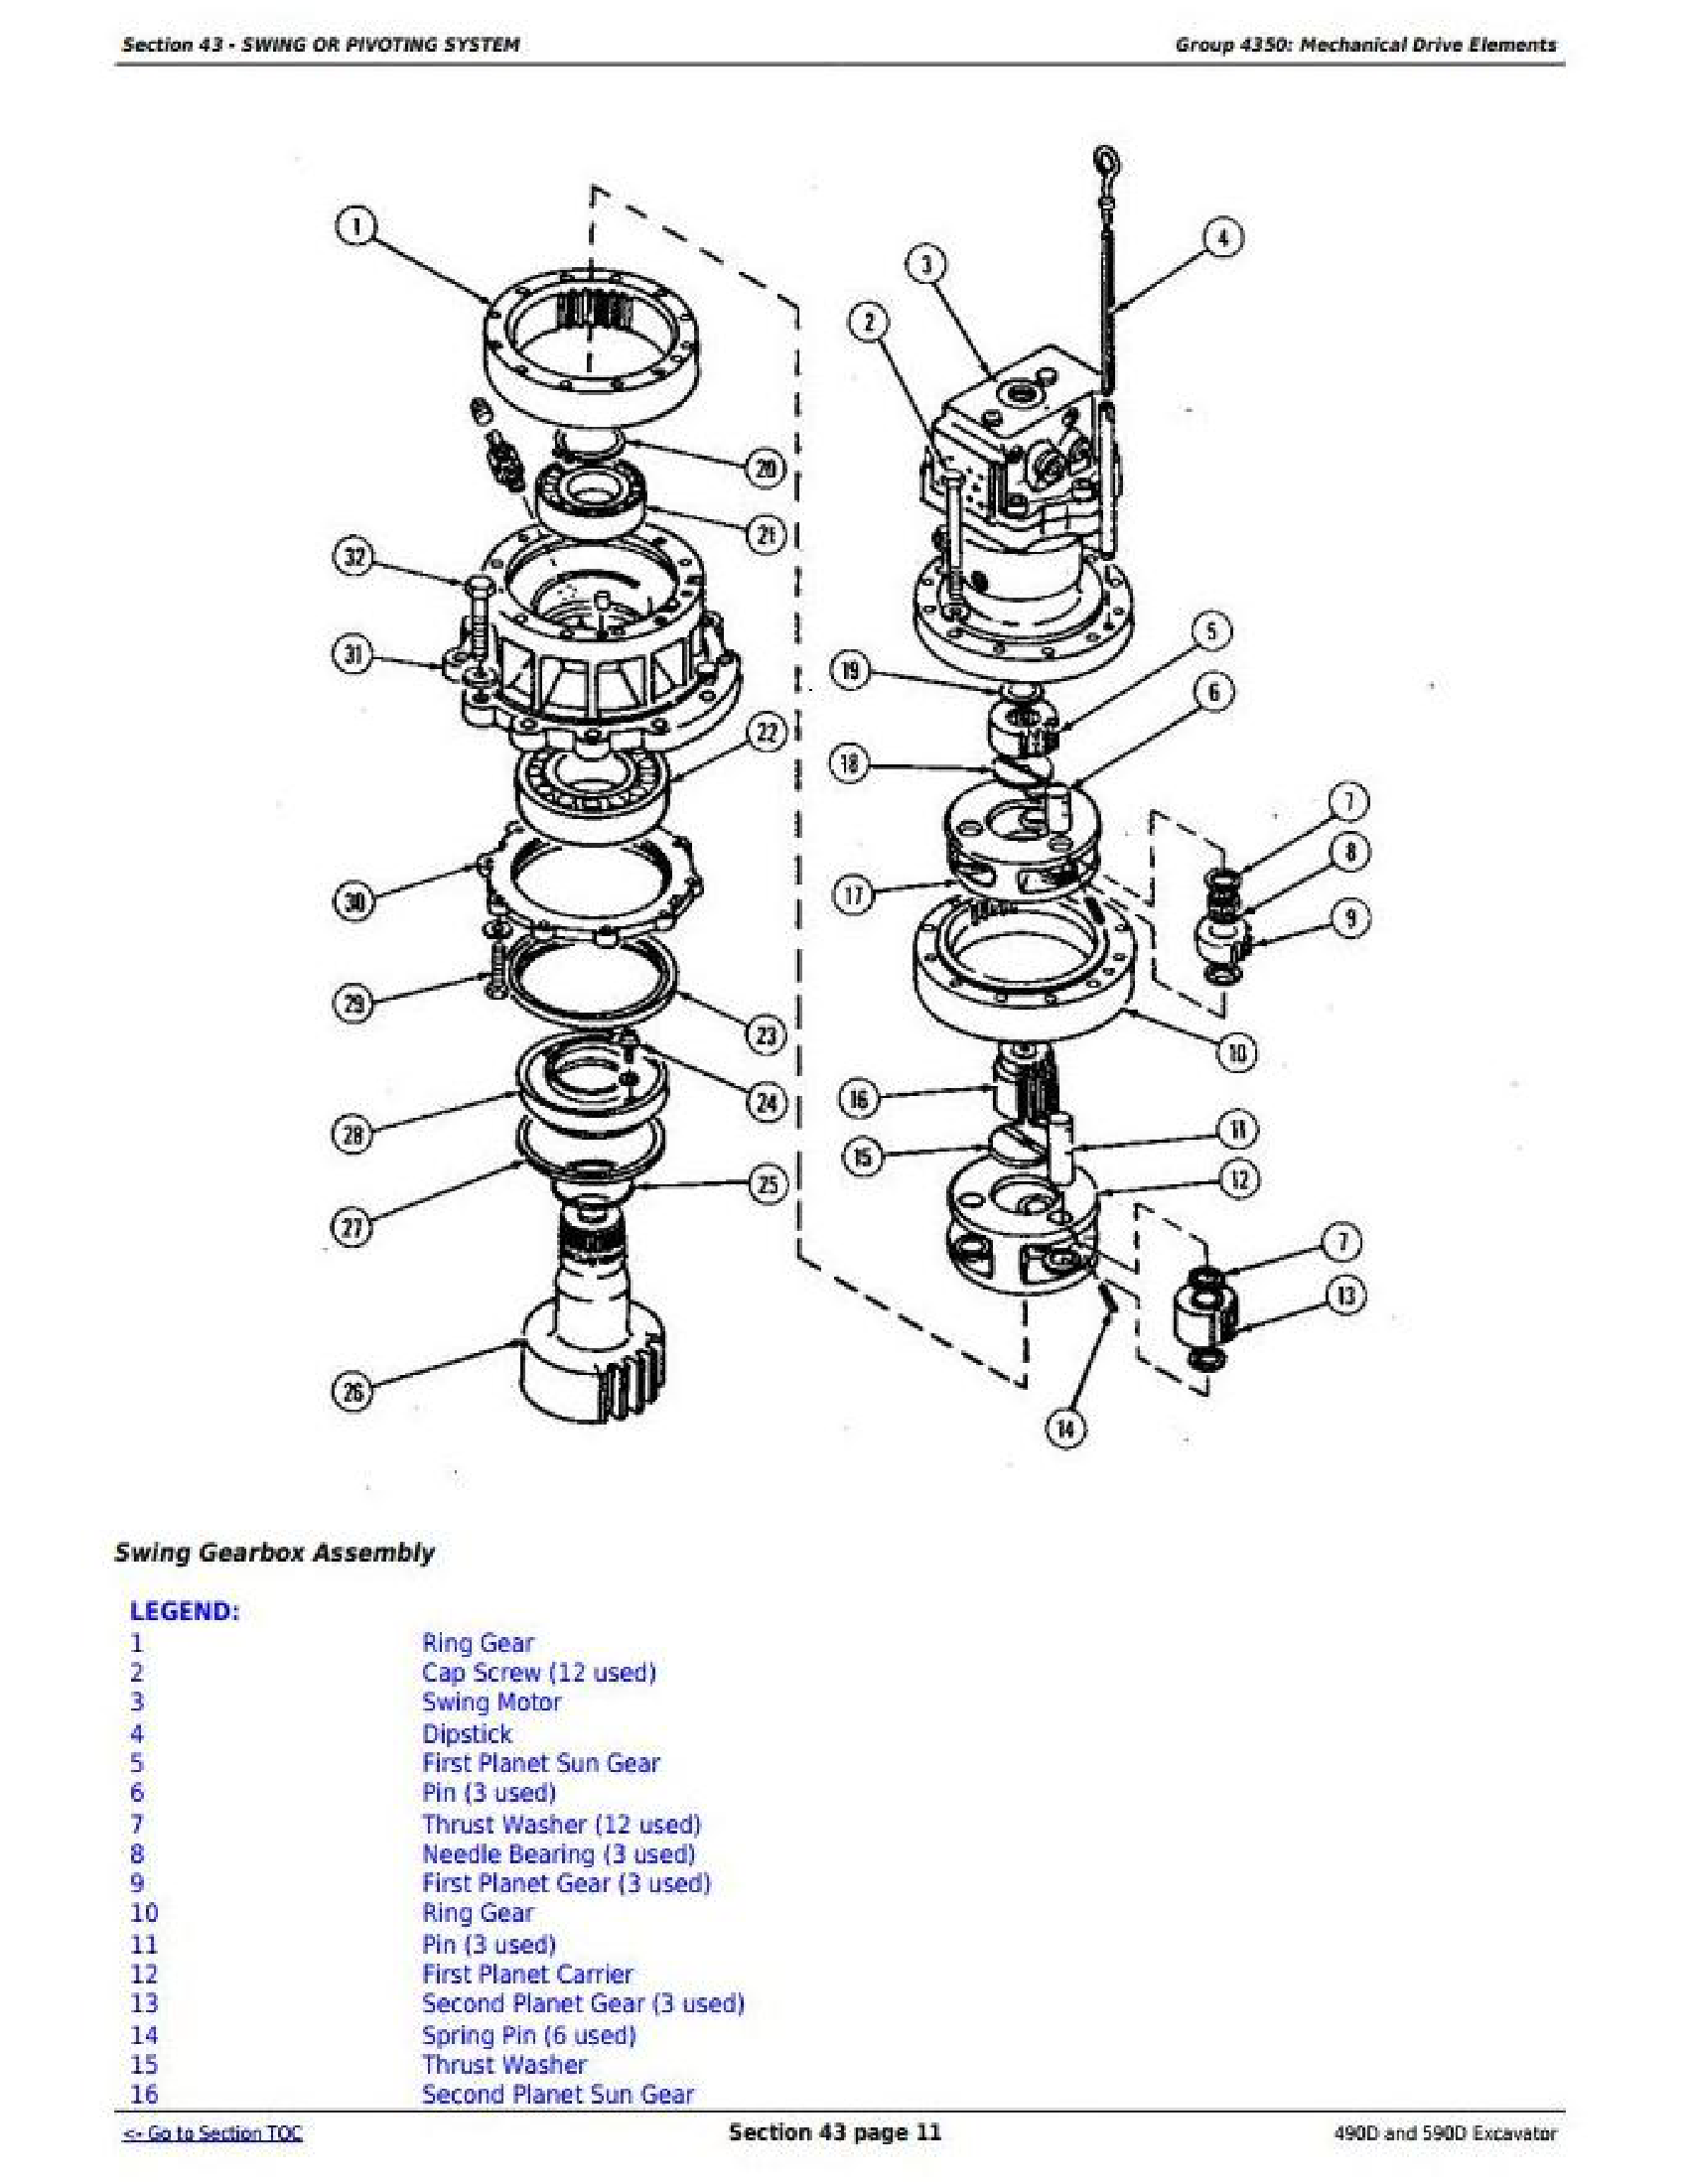 John Deere 50G manual pdf